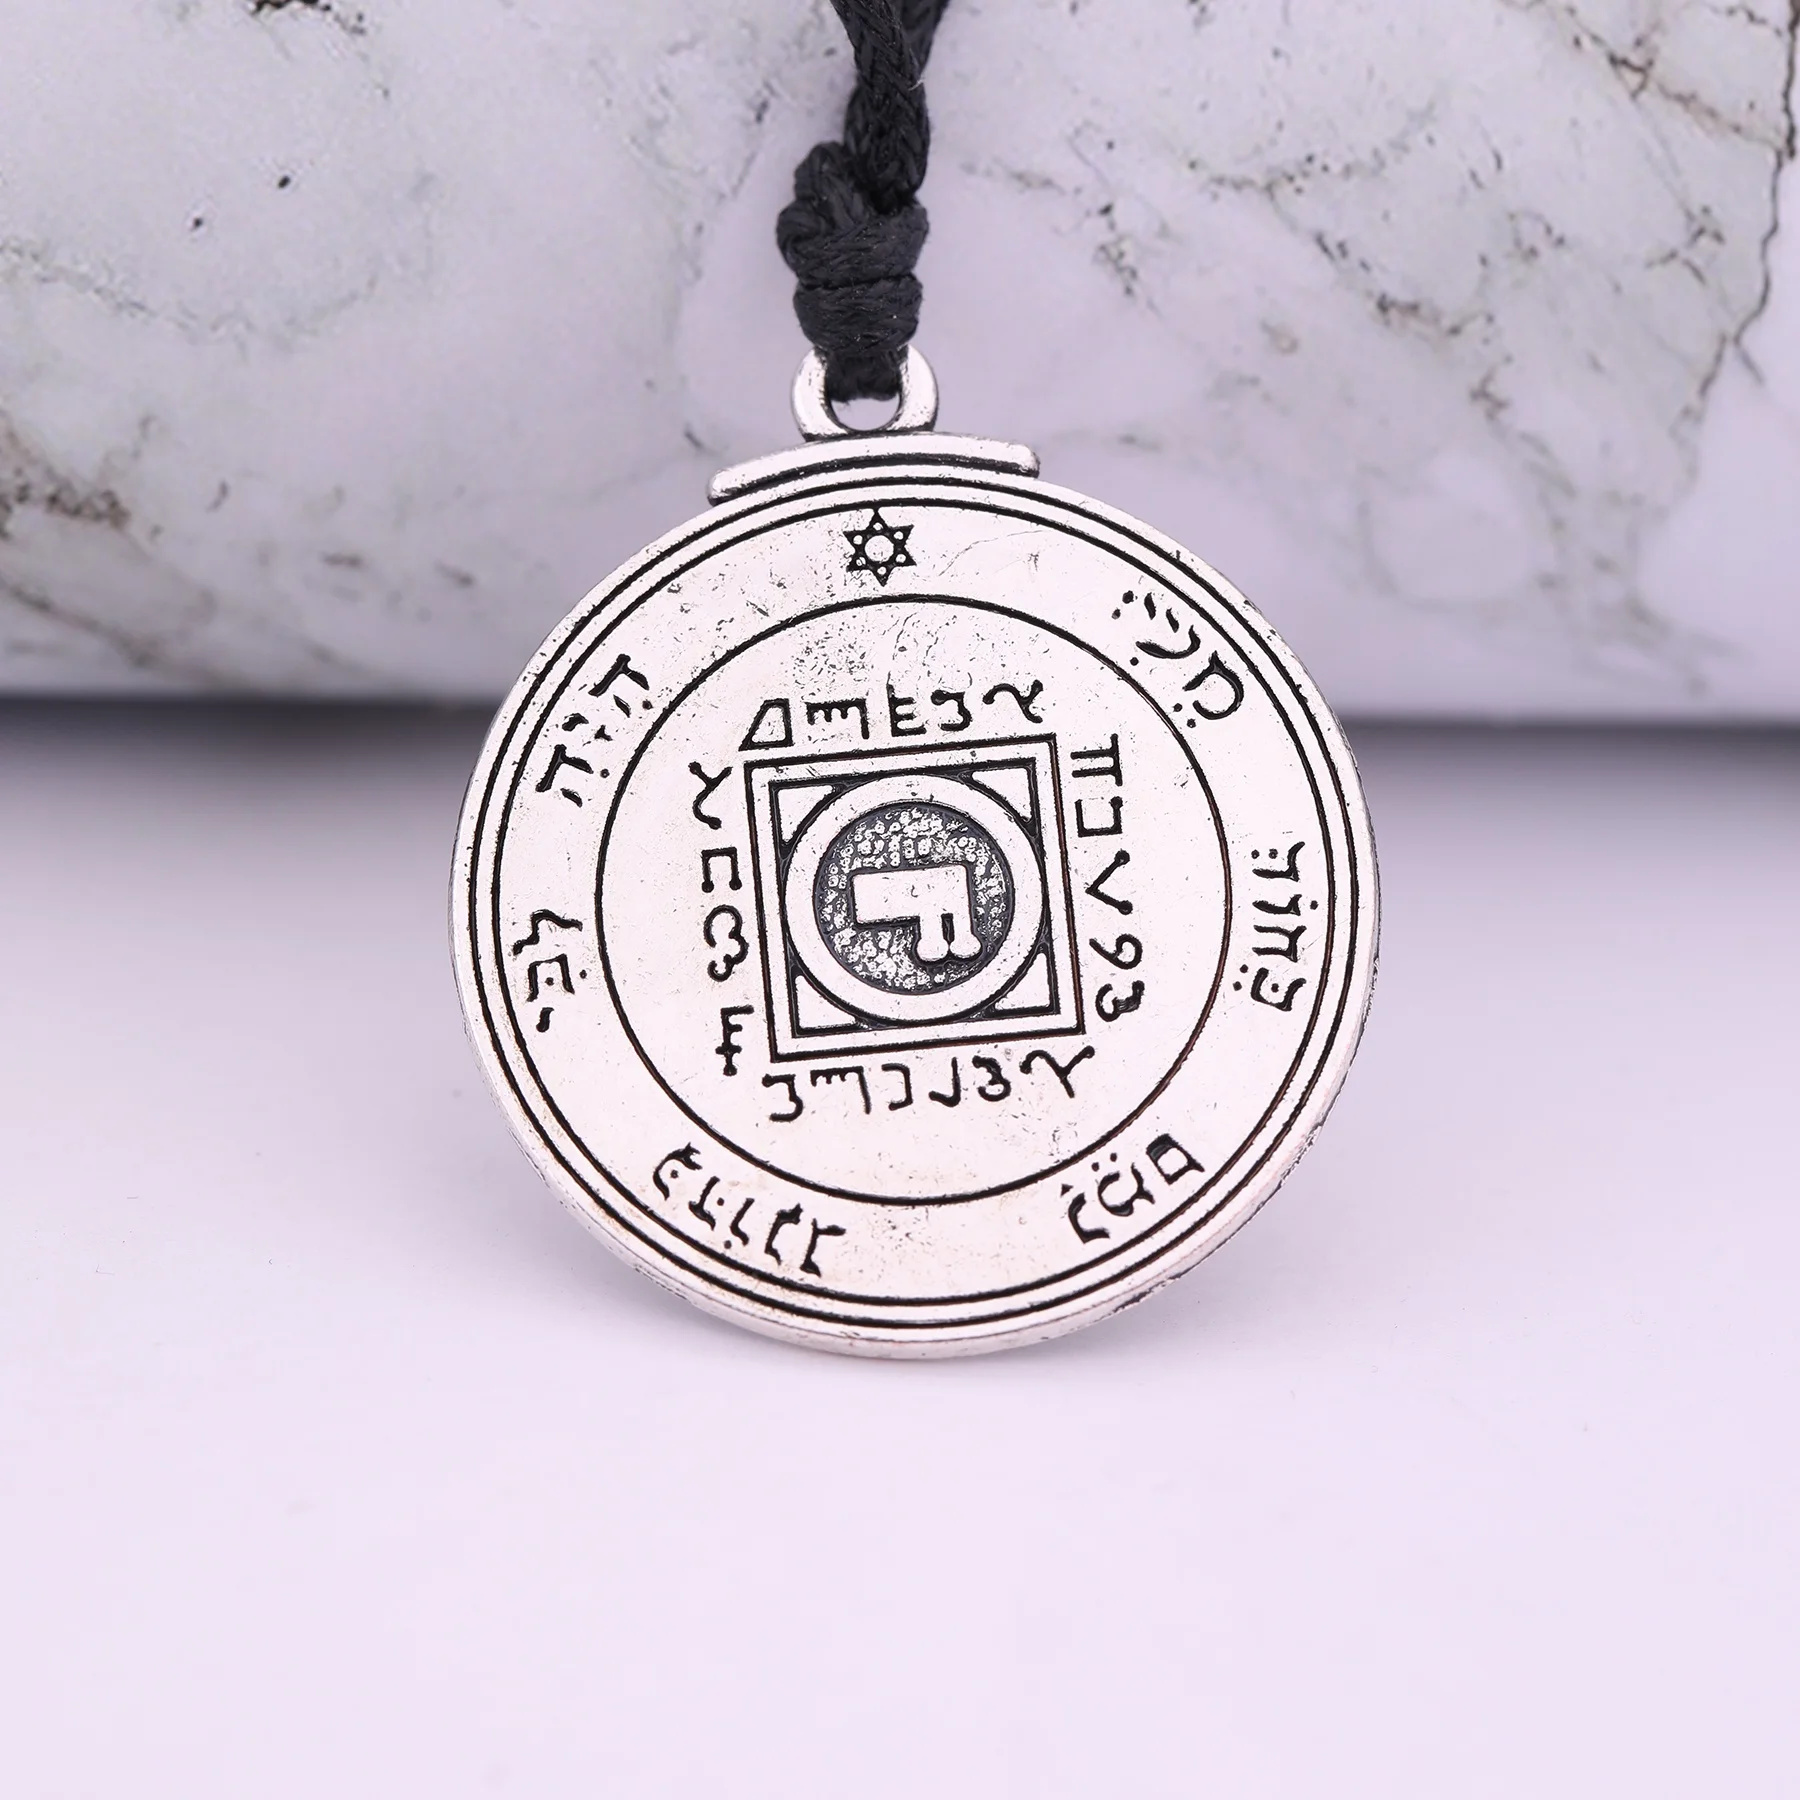 Ultimate Love Talisman Venus Pentacle Key of Solomon Seal Pendant Hermetic Enochian Kabbalah Pagan Wiccan Jewelry